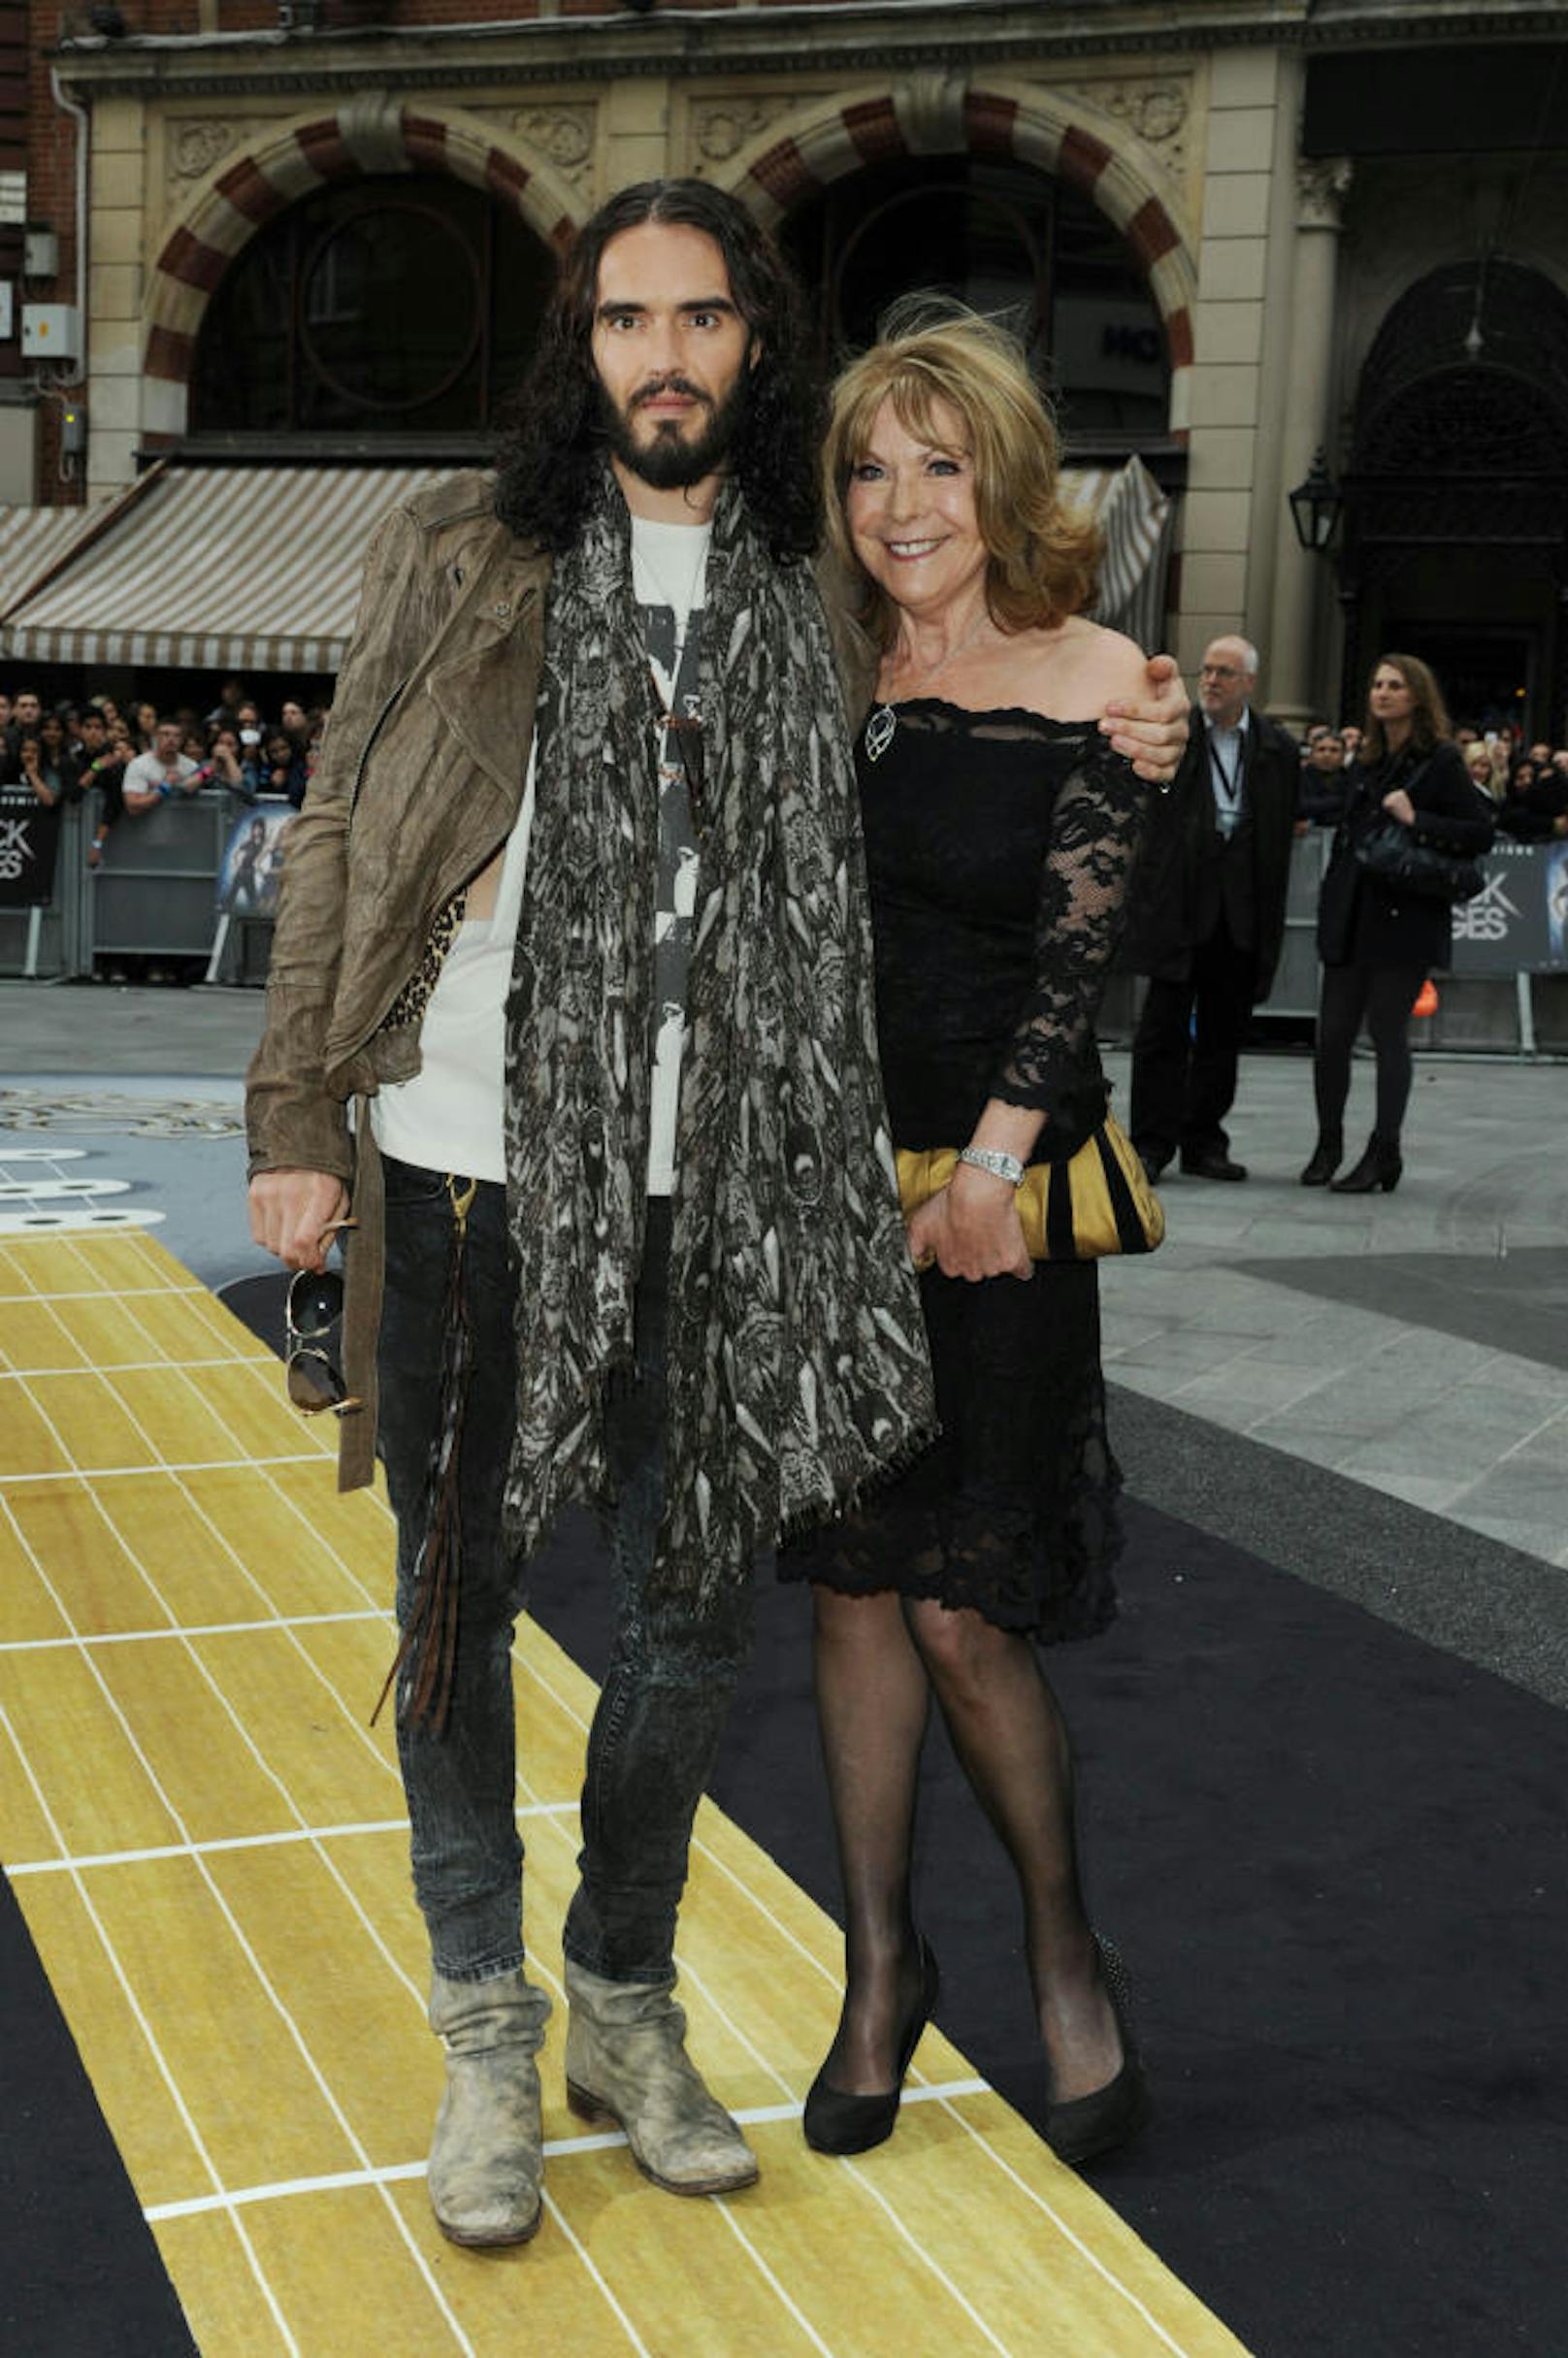 Russell und Barbara Brand am 10. Juni 2012 bei der "Rock of Ages"-England-Premiere. 

